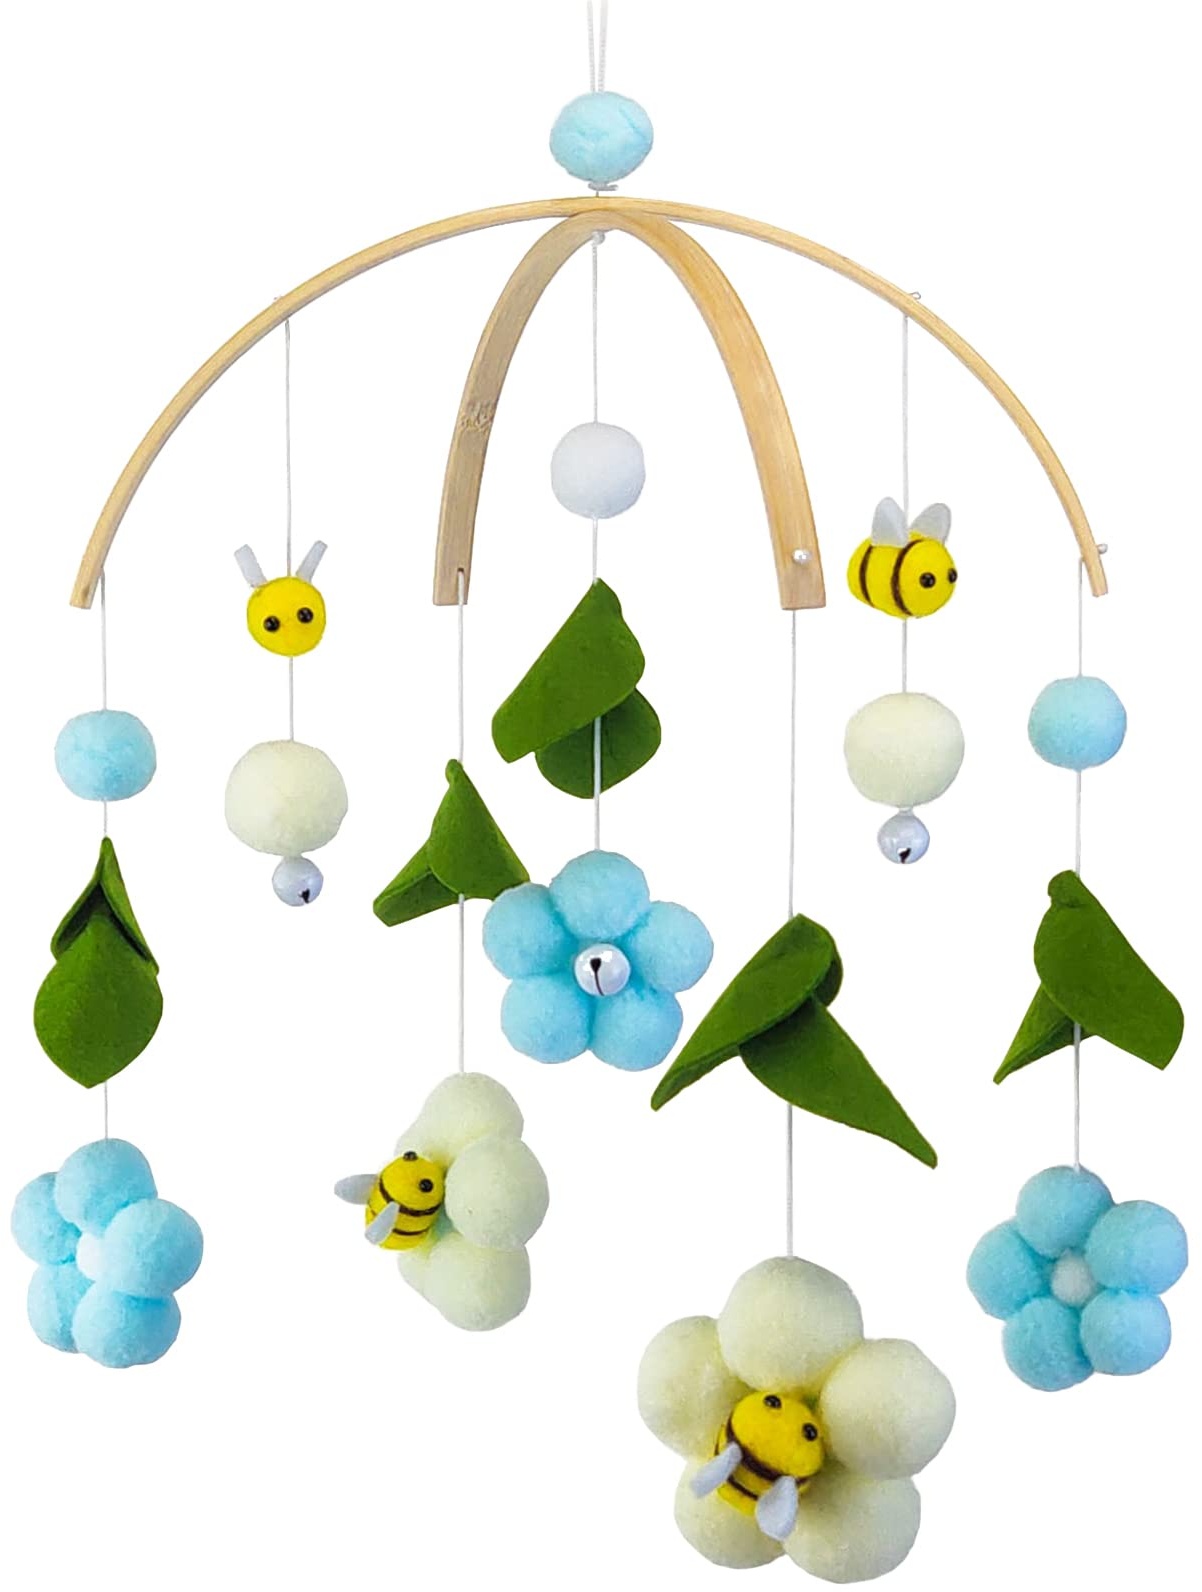 EXQULEG Baby Mobile Windspiel, Bienen Blumen Mobile Baby mit Filzbällen, Kinderzimmer Hängende Bettglocke, Neugeborenen Geschenk für Baby Mädchen oder Jungen (Hellblau)